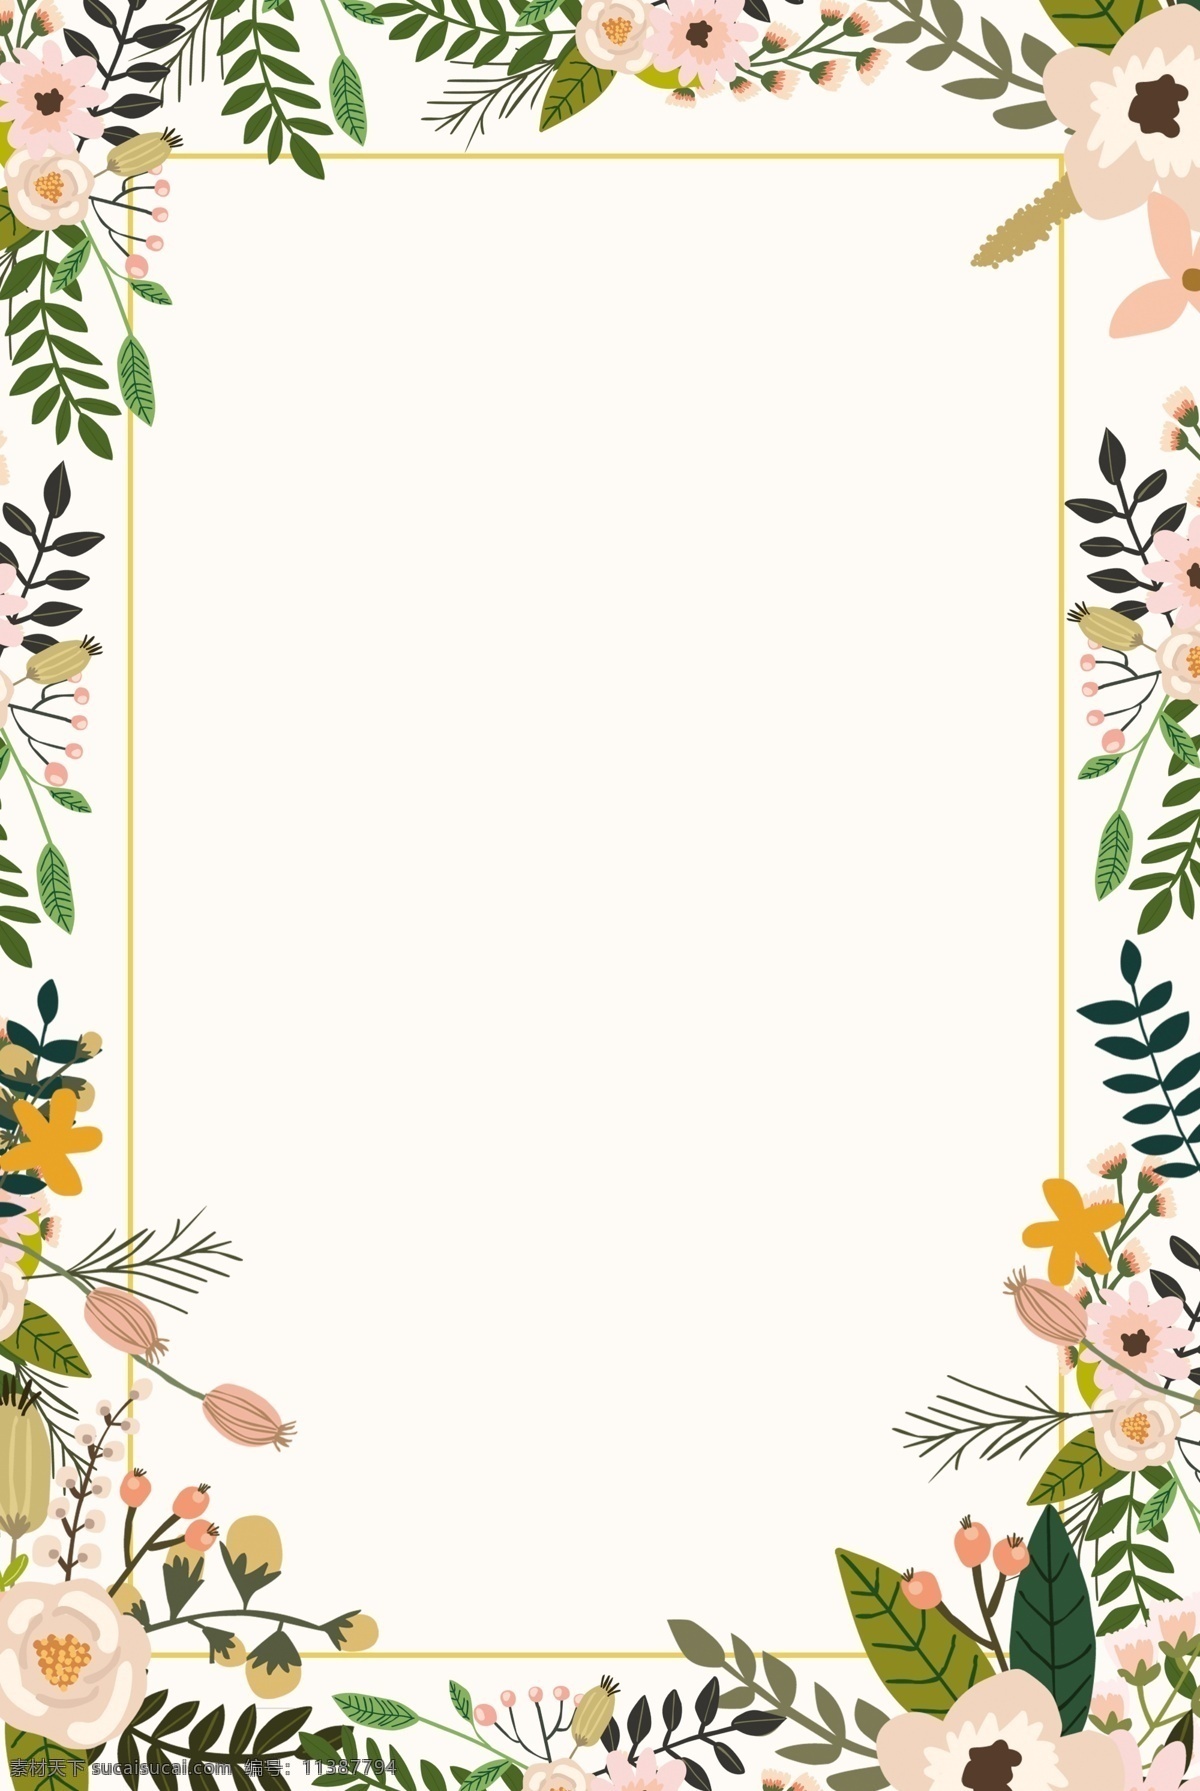 彩色 植物 花朵 边框 背景 海报 碎花 米色 文艺风 小清新 婚庆